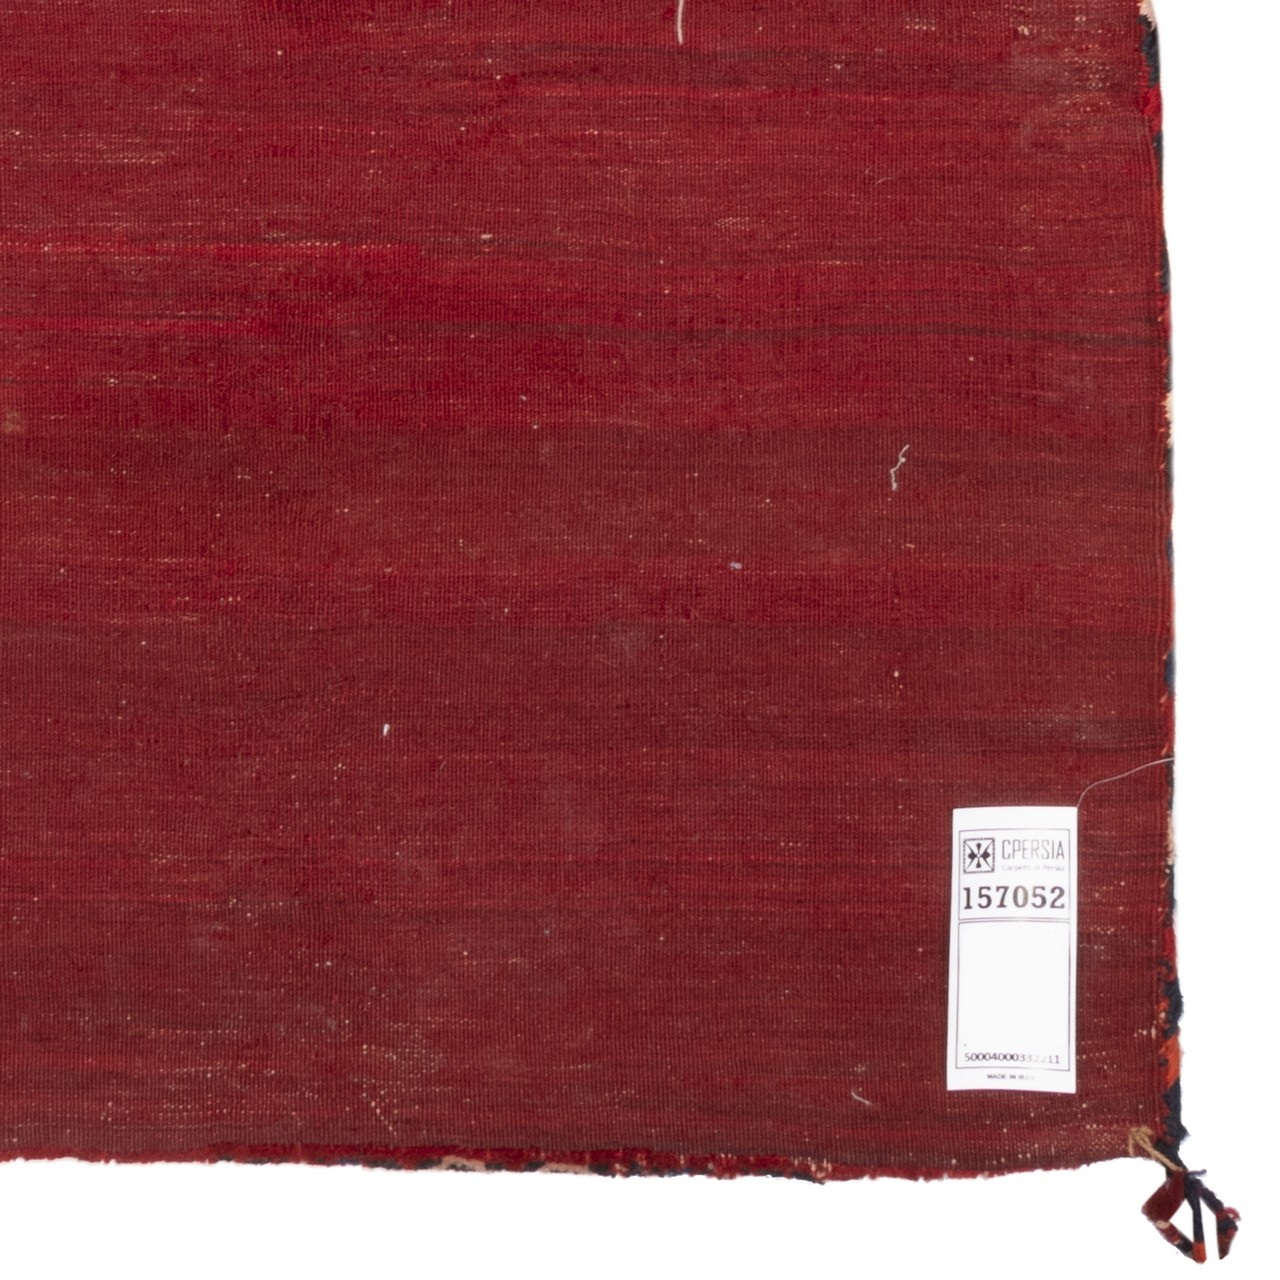 خورجین دستباف قدیمی نیم متری بلوچ کد 157052